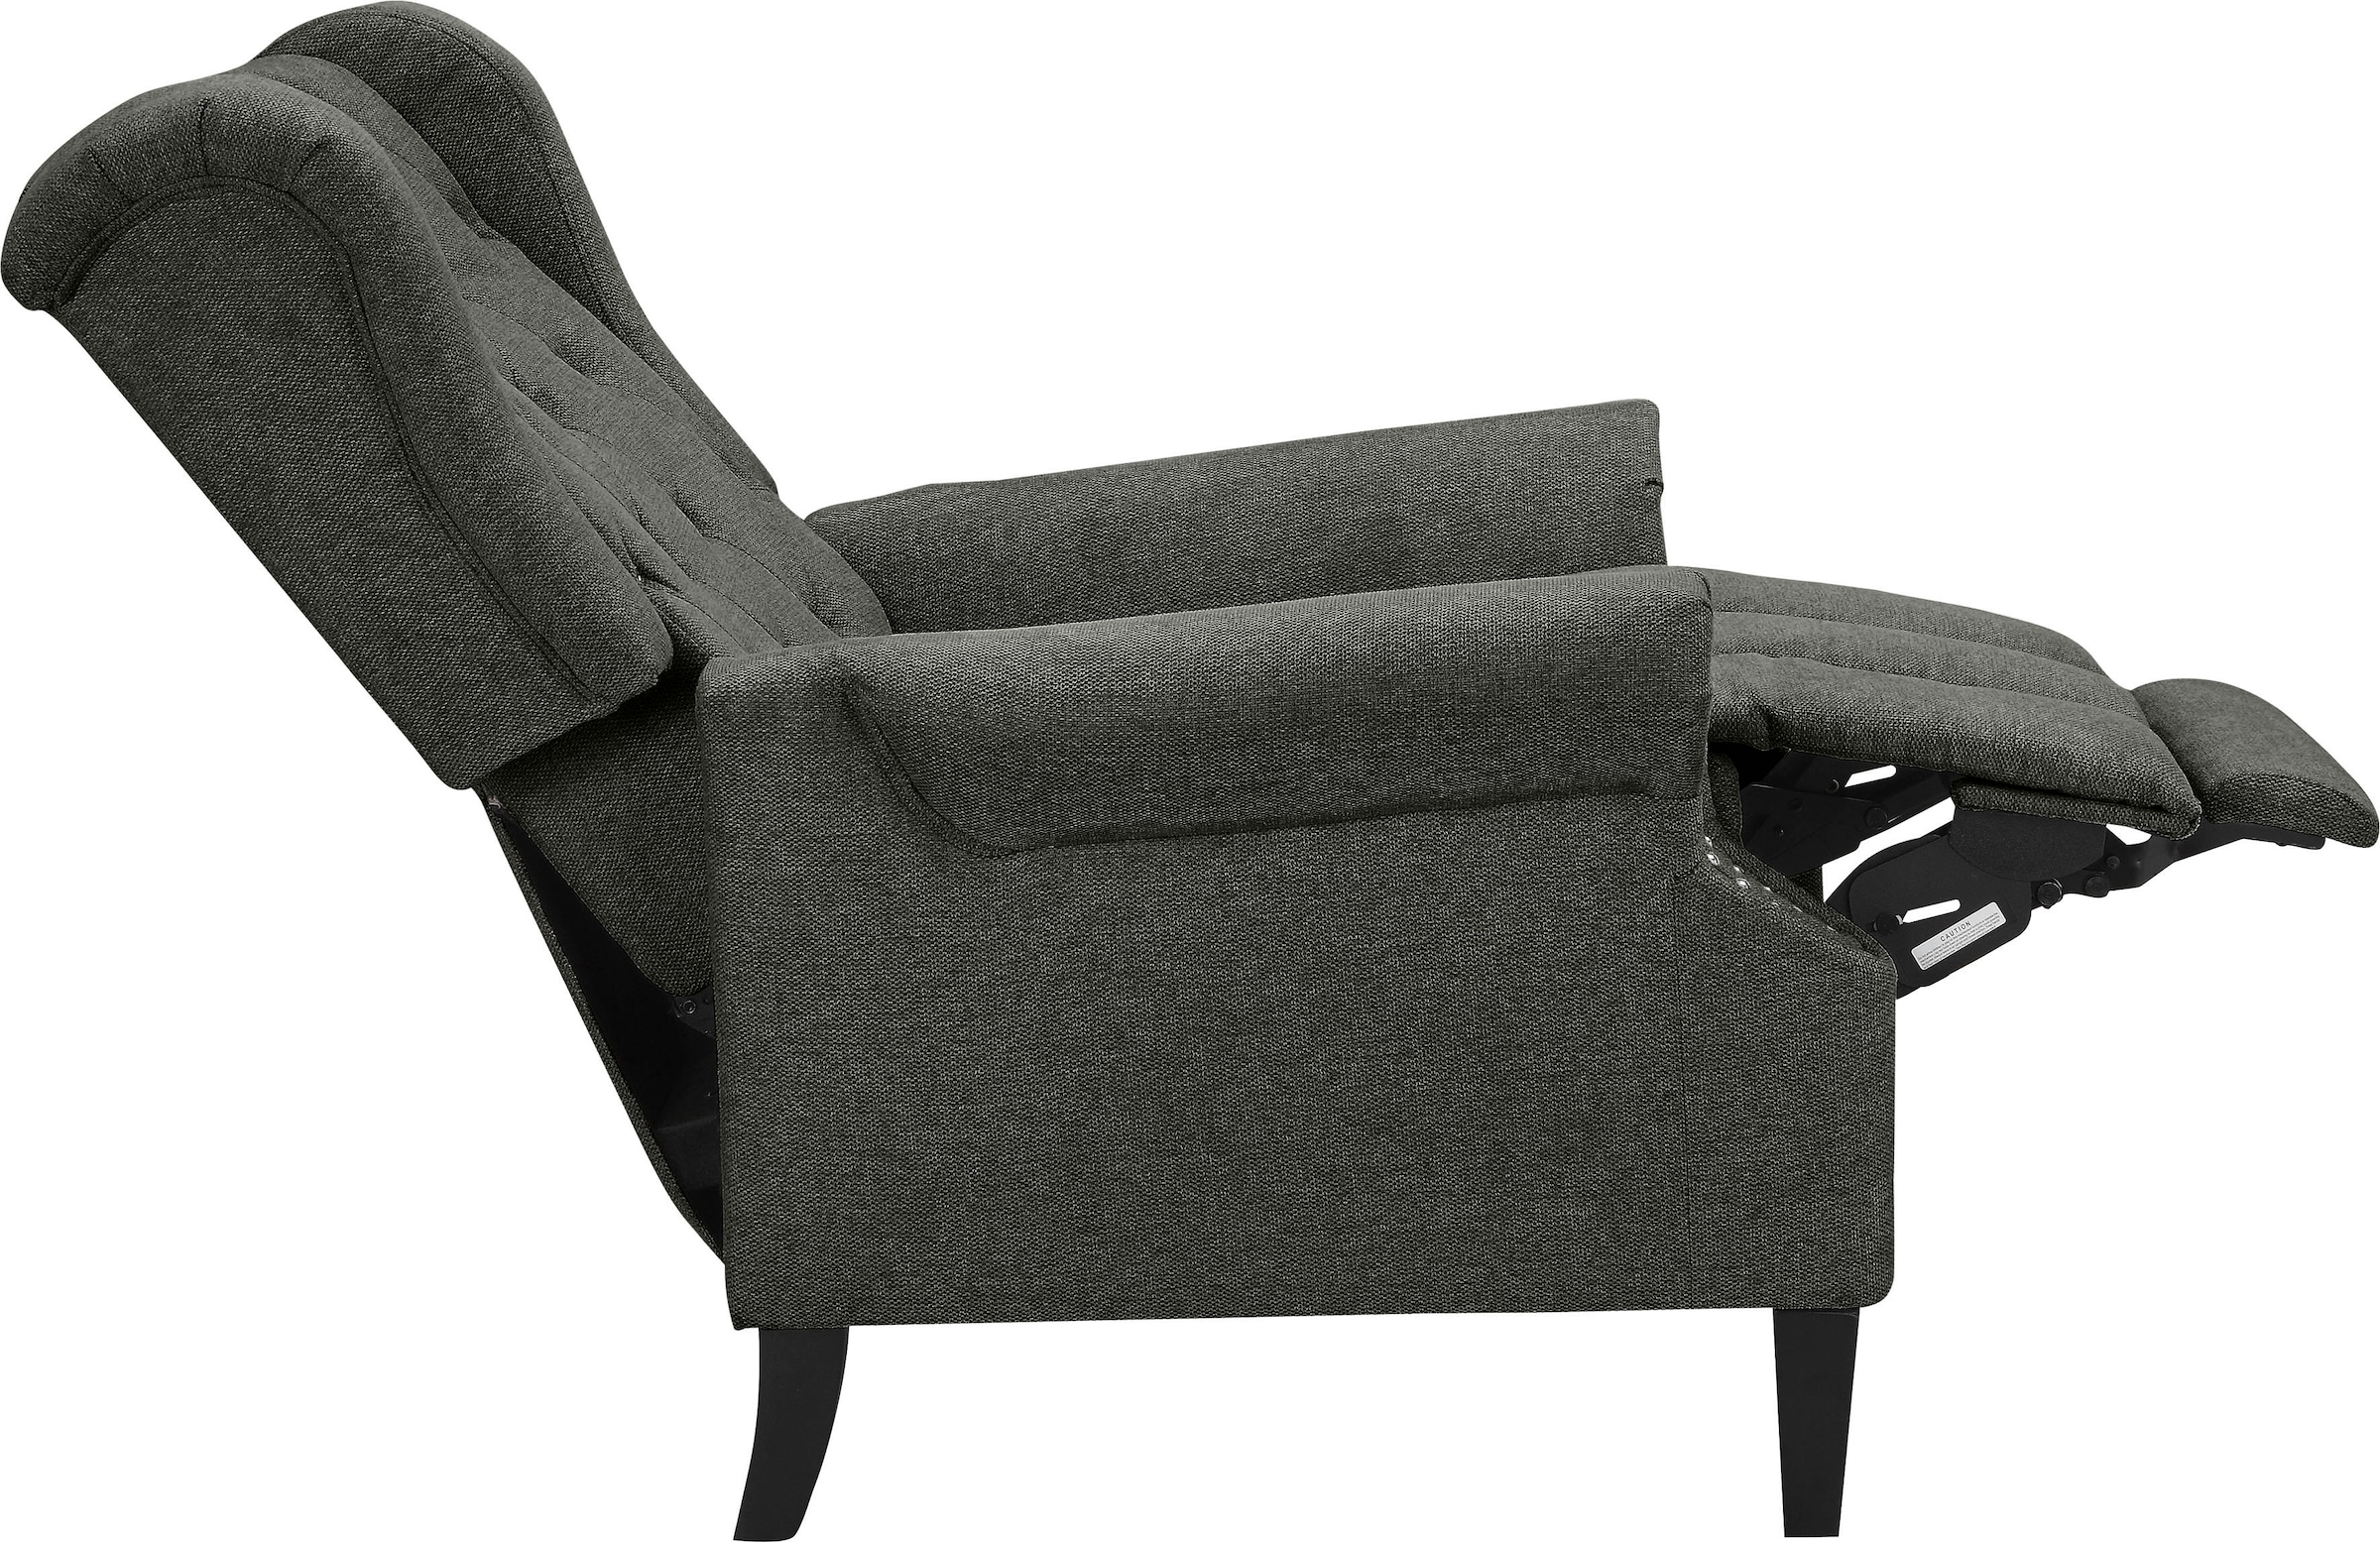 Leonique Ohrensessel »Childebert«, (1 St.), mit Verstellung, Sitz und Rücken gepolstert, Sitzhöhe 49,5 cm